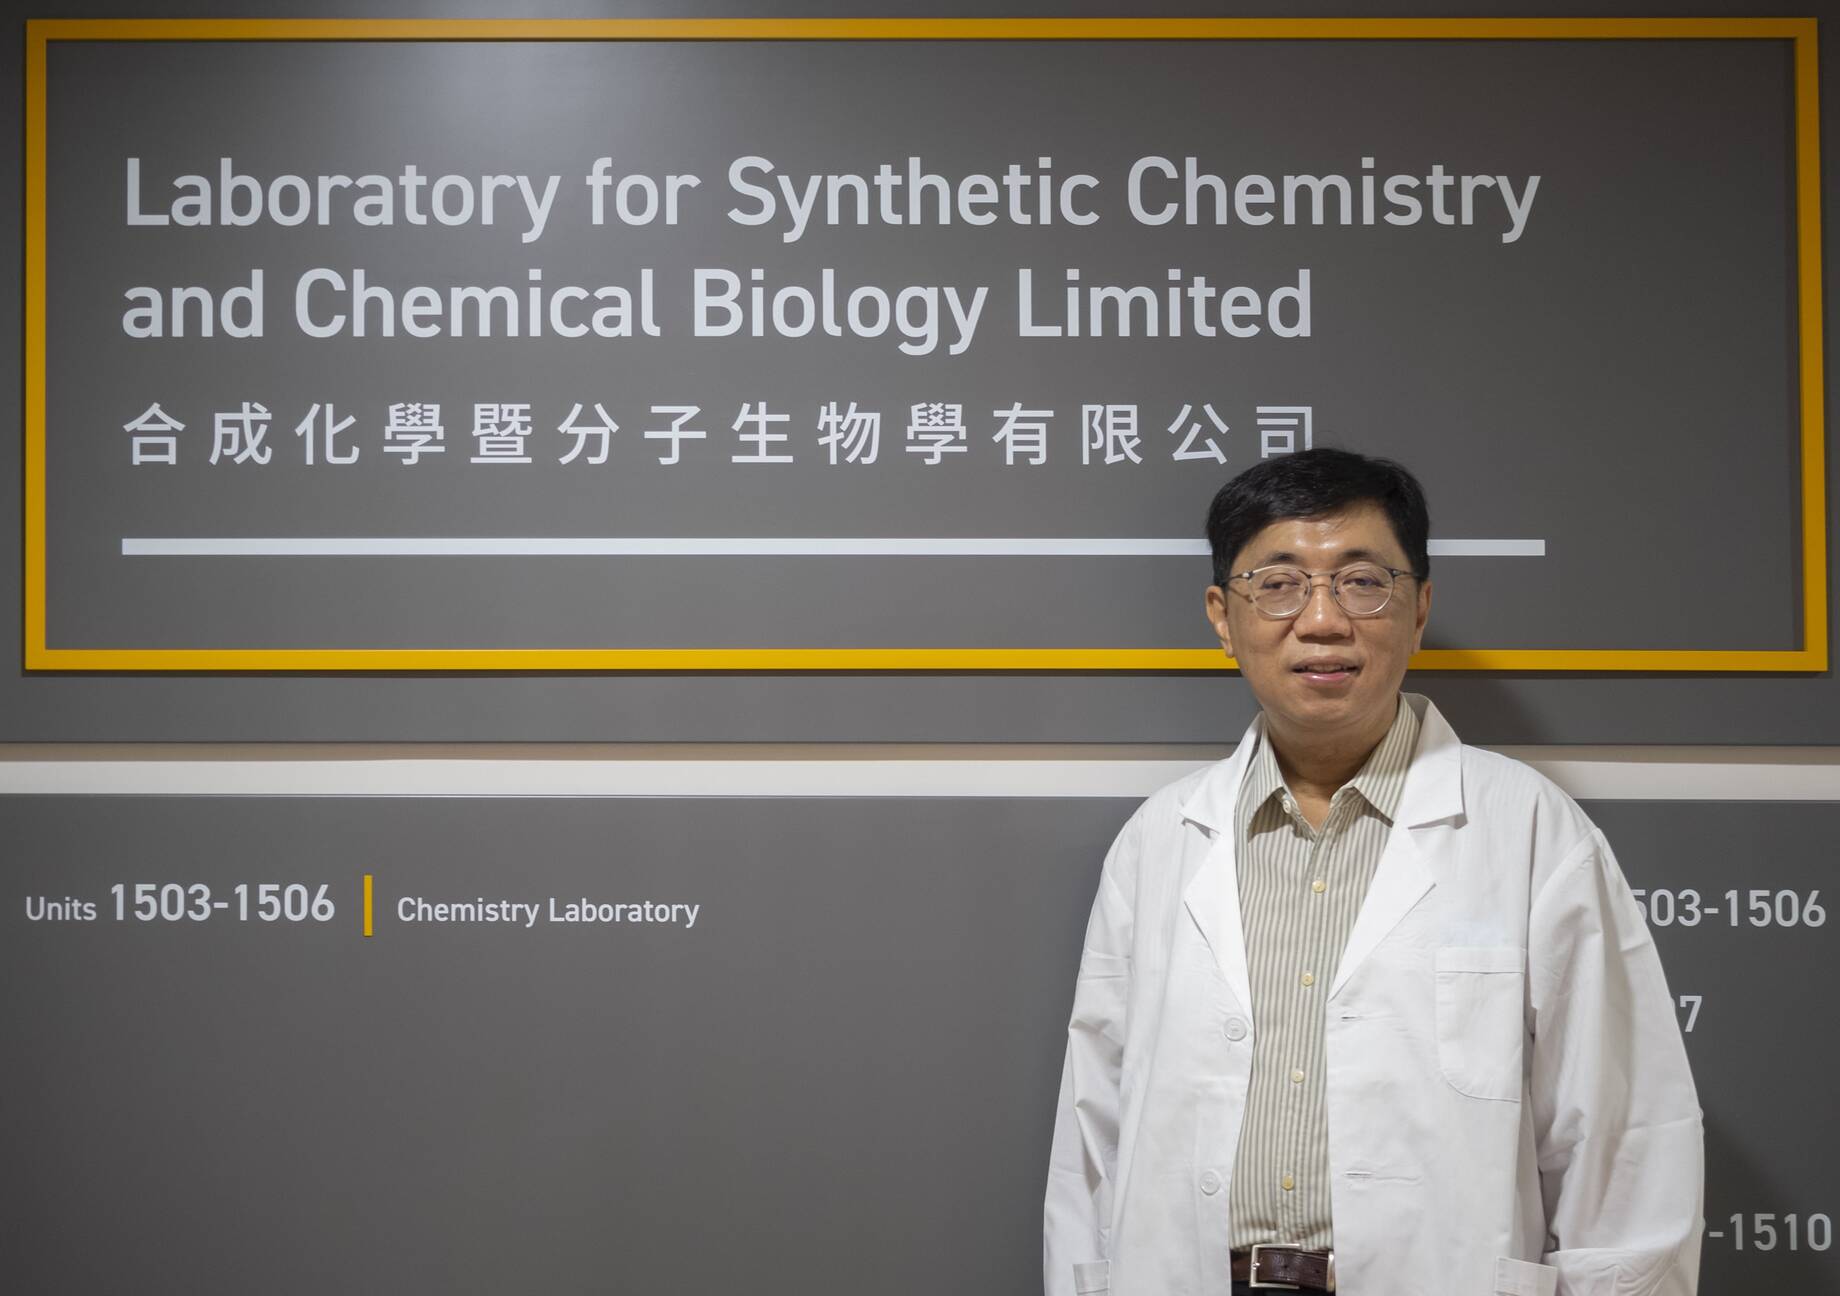 支教授相信创新的合成化学与化学生物学的技术将能研发出新的治疗药物。